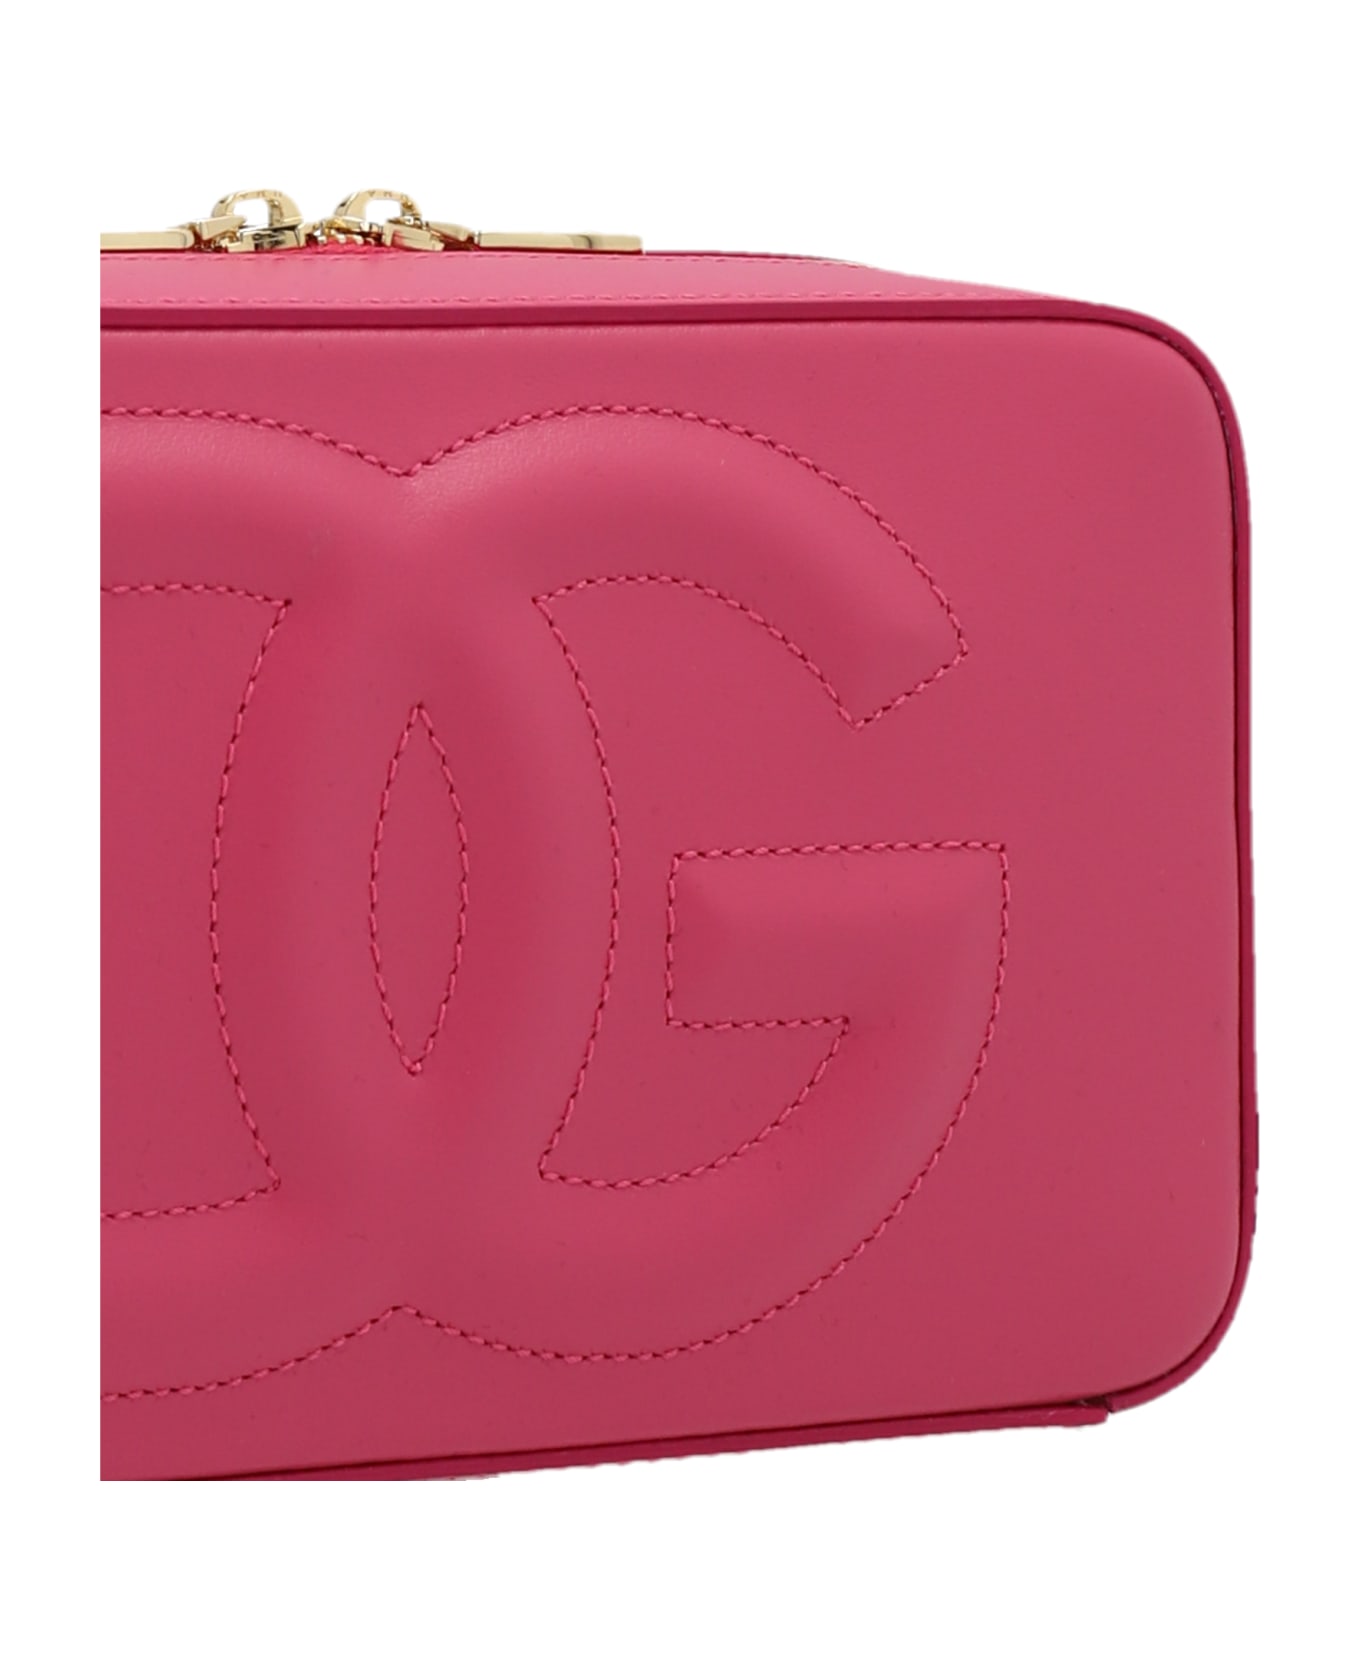 Dolce & Gabbana Logo Crossbody Bag - Fuchsia